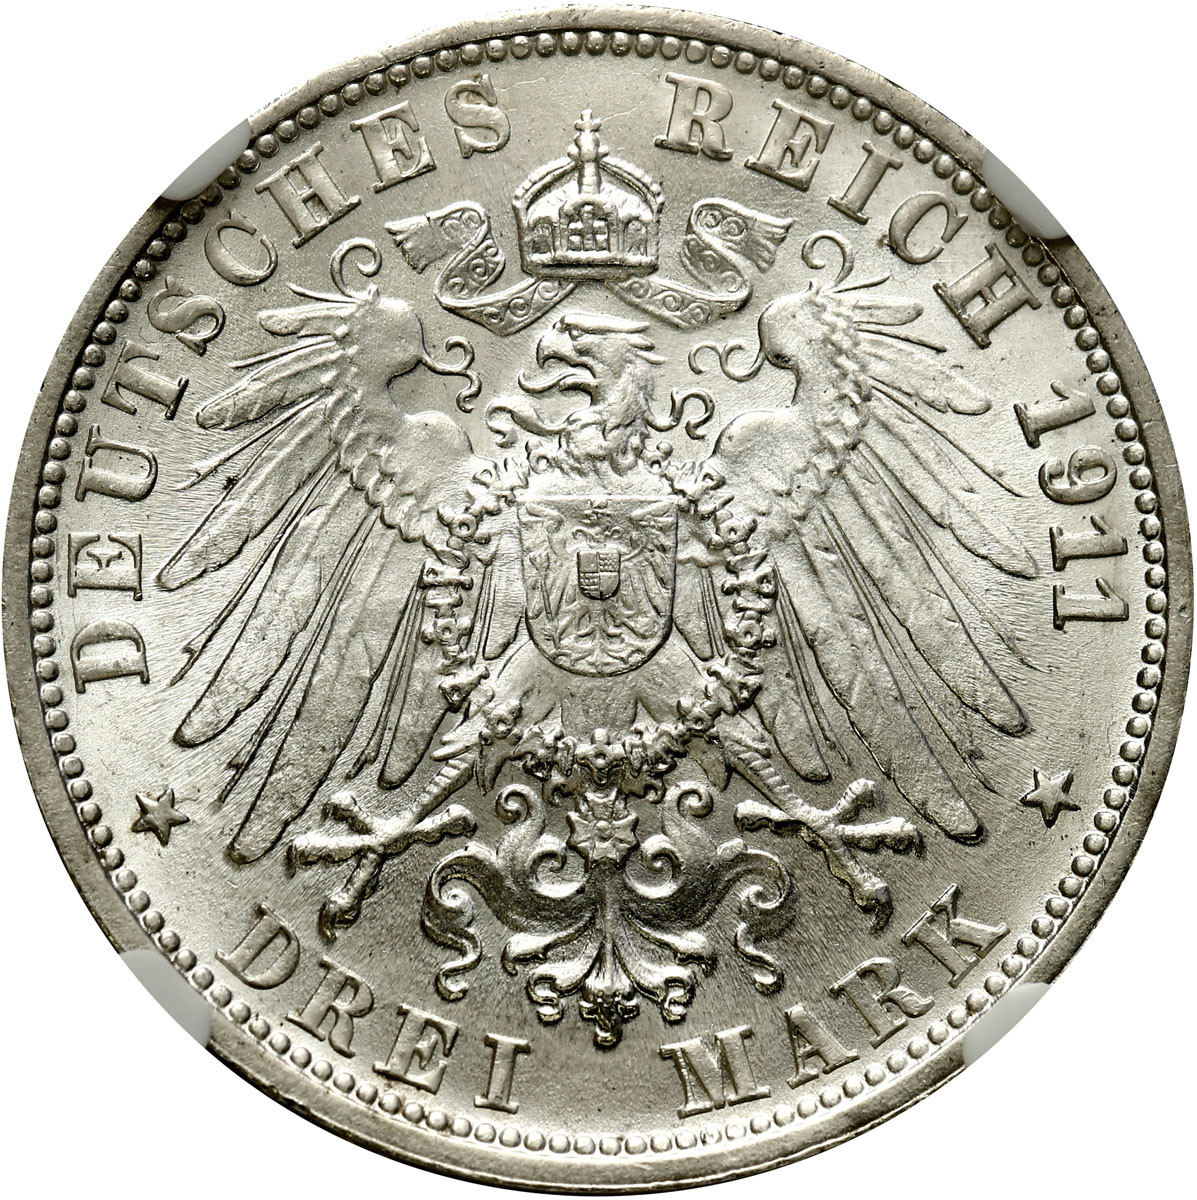 Niemcy, Wirtembergia. 3 marki 1911 F, Stuttgart NGC MS66 (2 MAX) - PIĘKNE